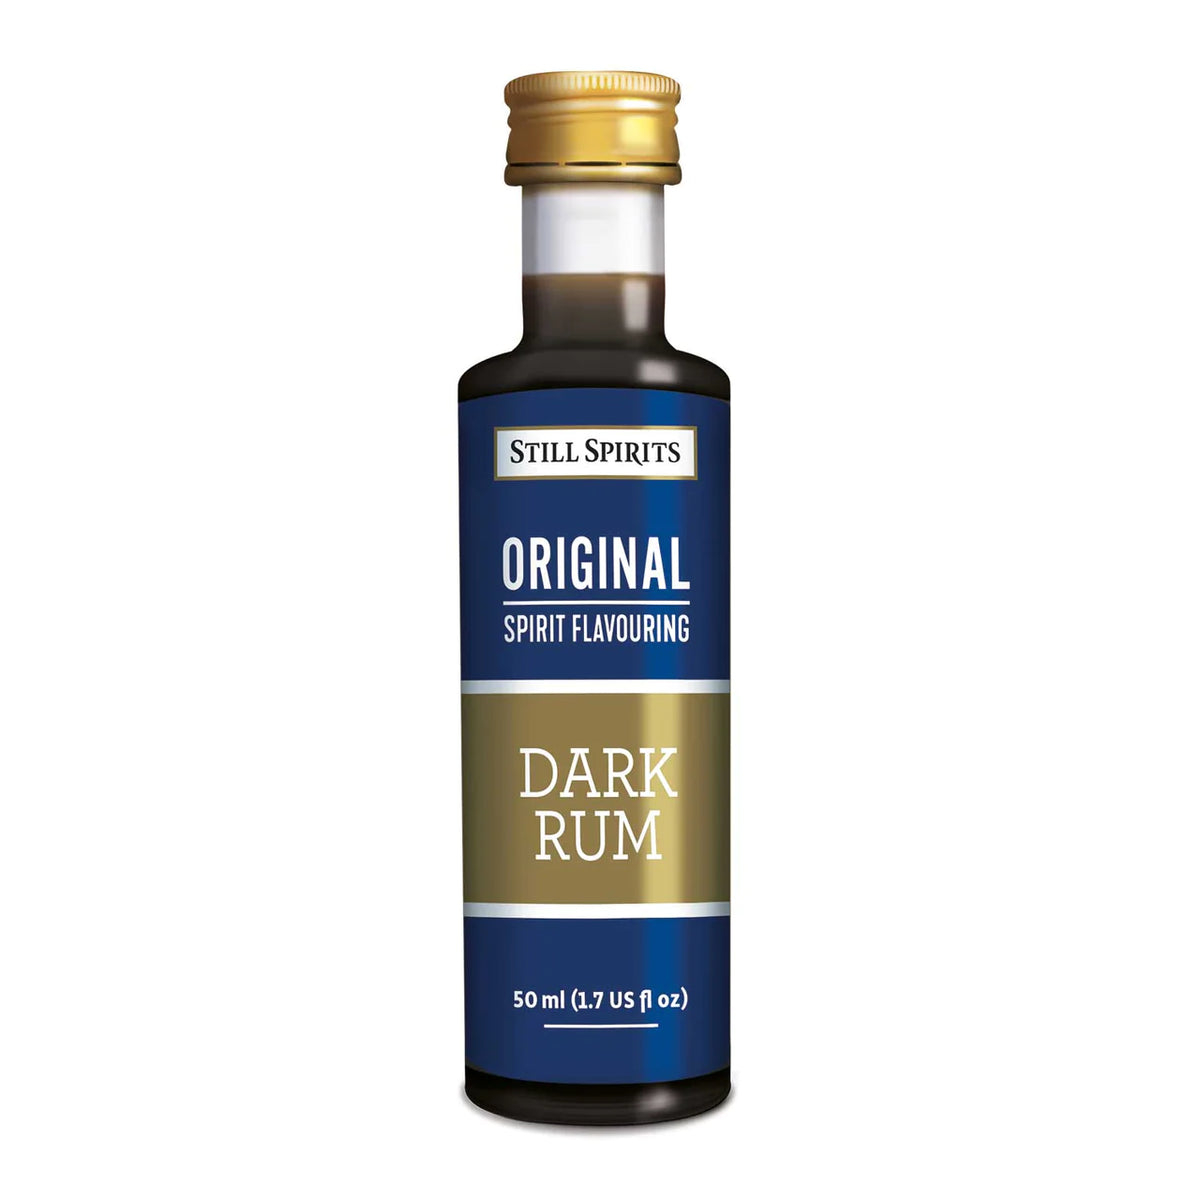 Still Spirits Original Dark Rum